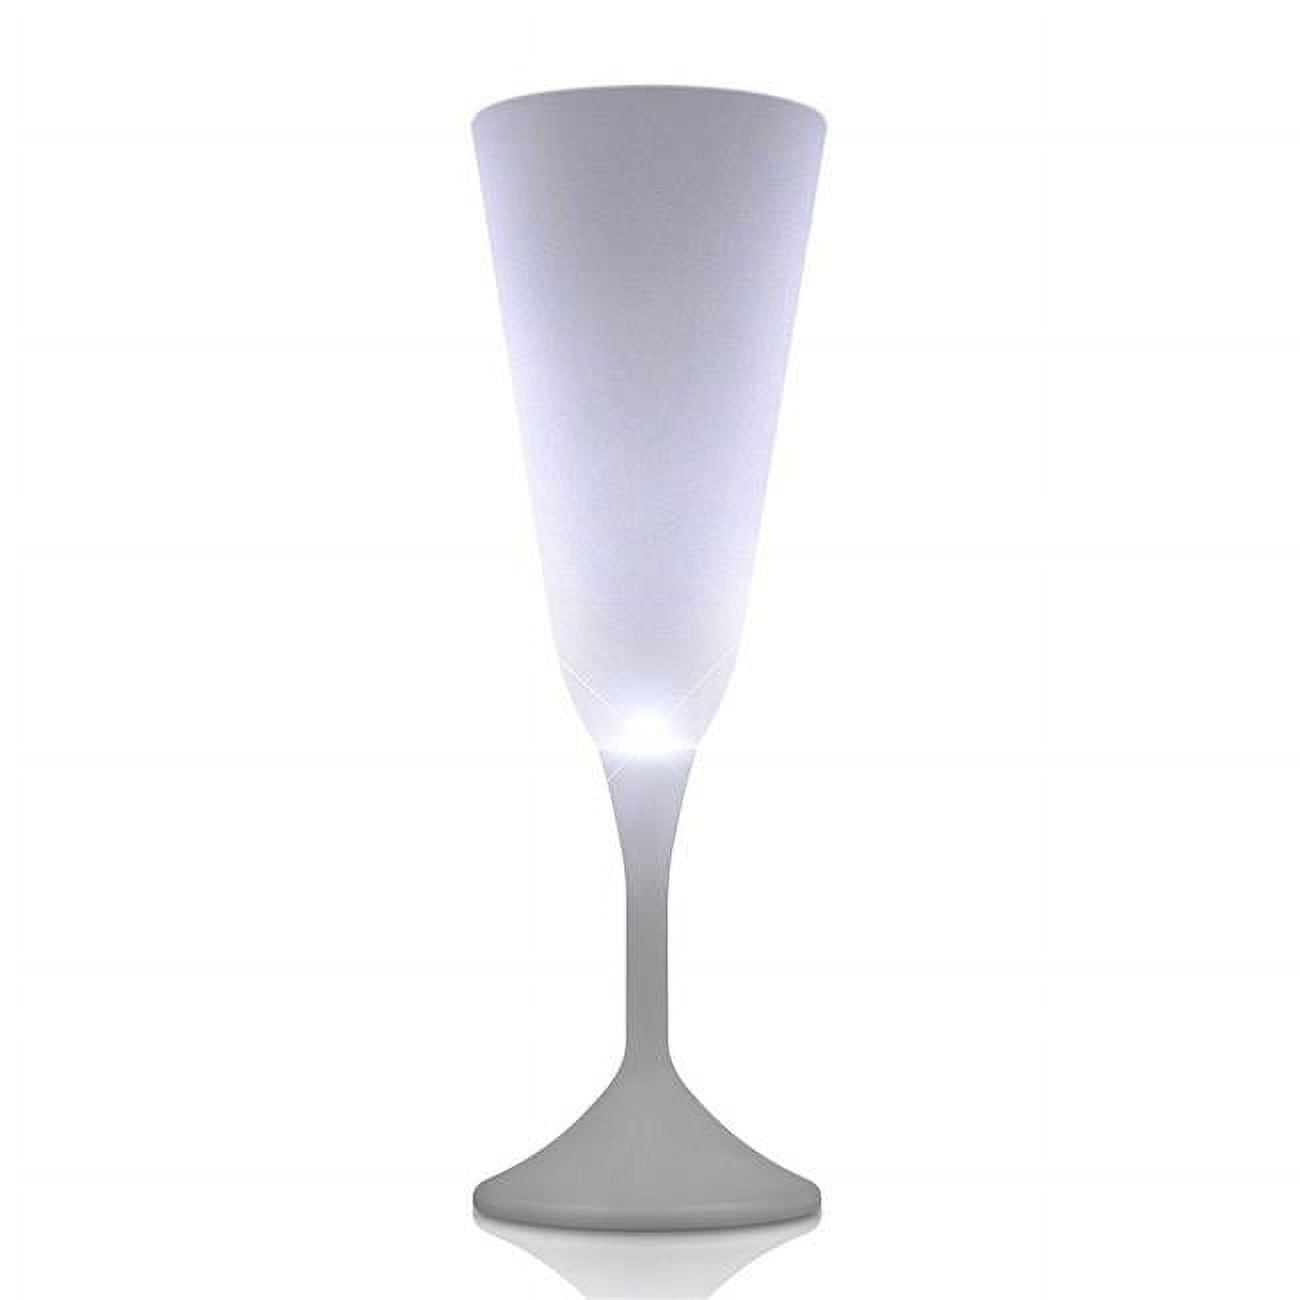 blinkee STWLCWG-WT Steady White LED Champagne Wine Glass